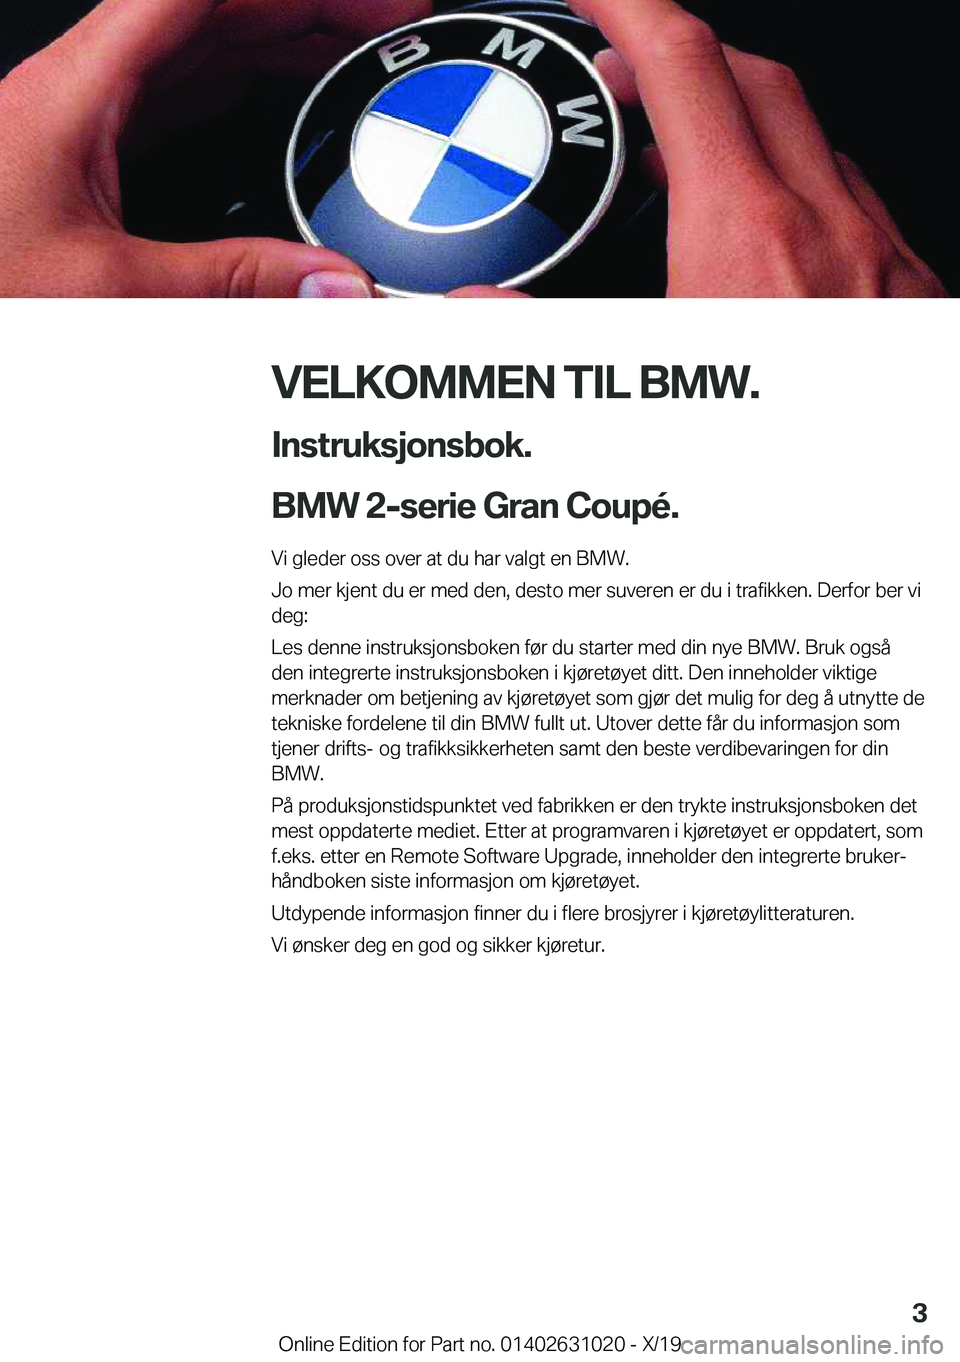 BMW 2 SERIES GRAN COUPE 2020  InstruksjonsbØker (in Norwegian) �V�E�L�K�O�M�M�E�N��T�I�L��B�M�W�.�I�n�s�t�r�u�k�s�j�o�n�s�b�o�k�.
�B�M�W��2�-�s�e�r�i�e��G�r�a�n��C�o�u�p�